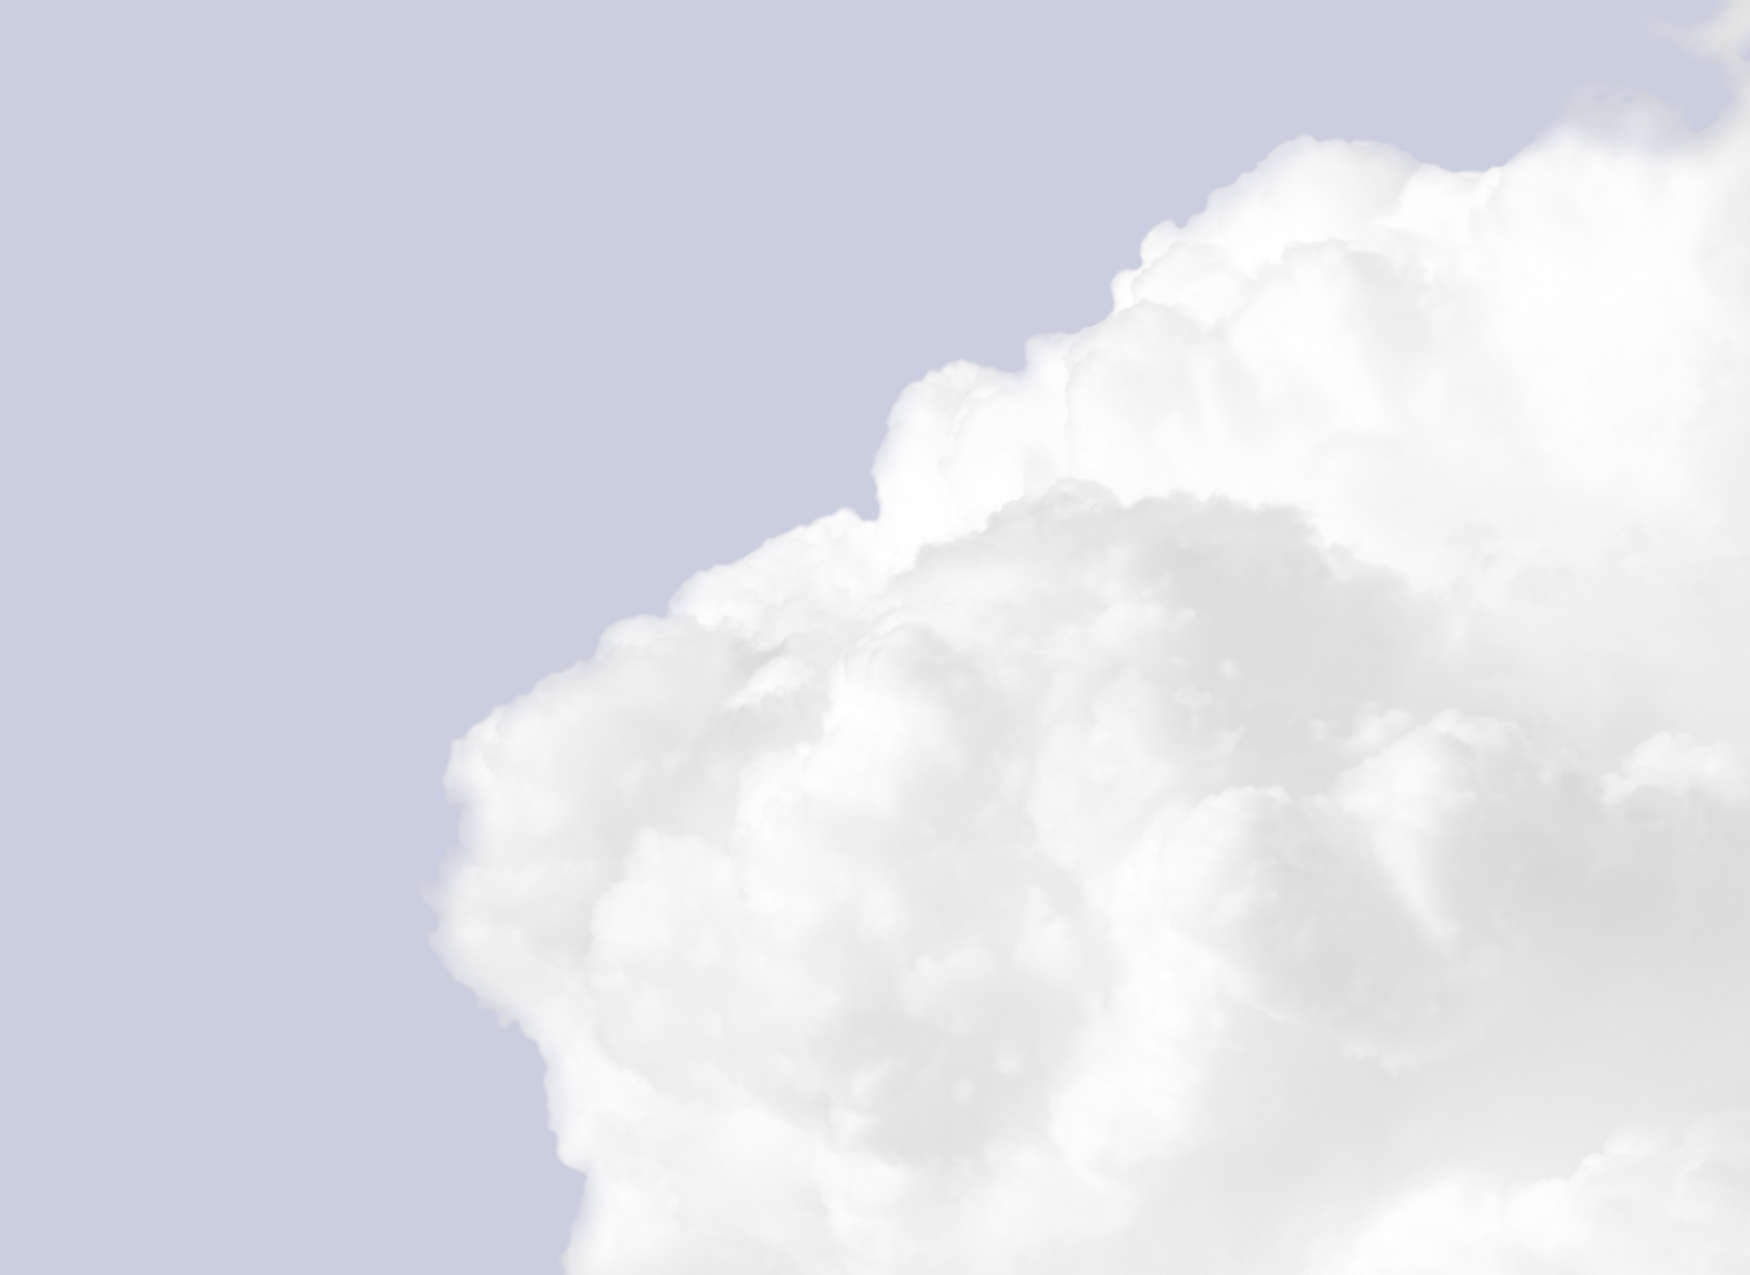             Fototapete mit weiße Wolken am hellen blauen Himmel – Blau, Weiß
        